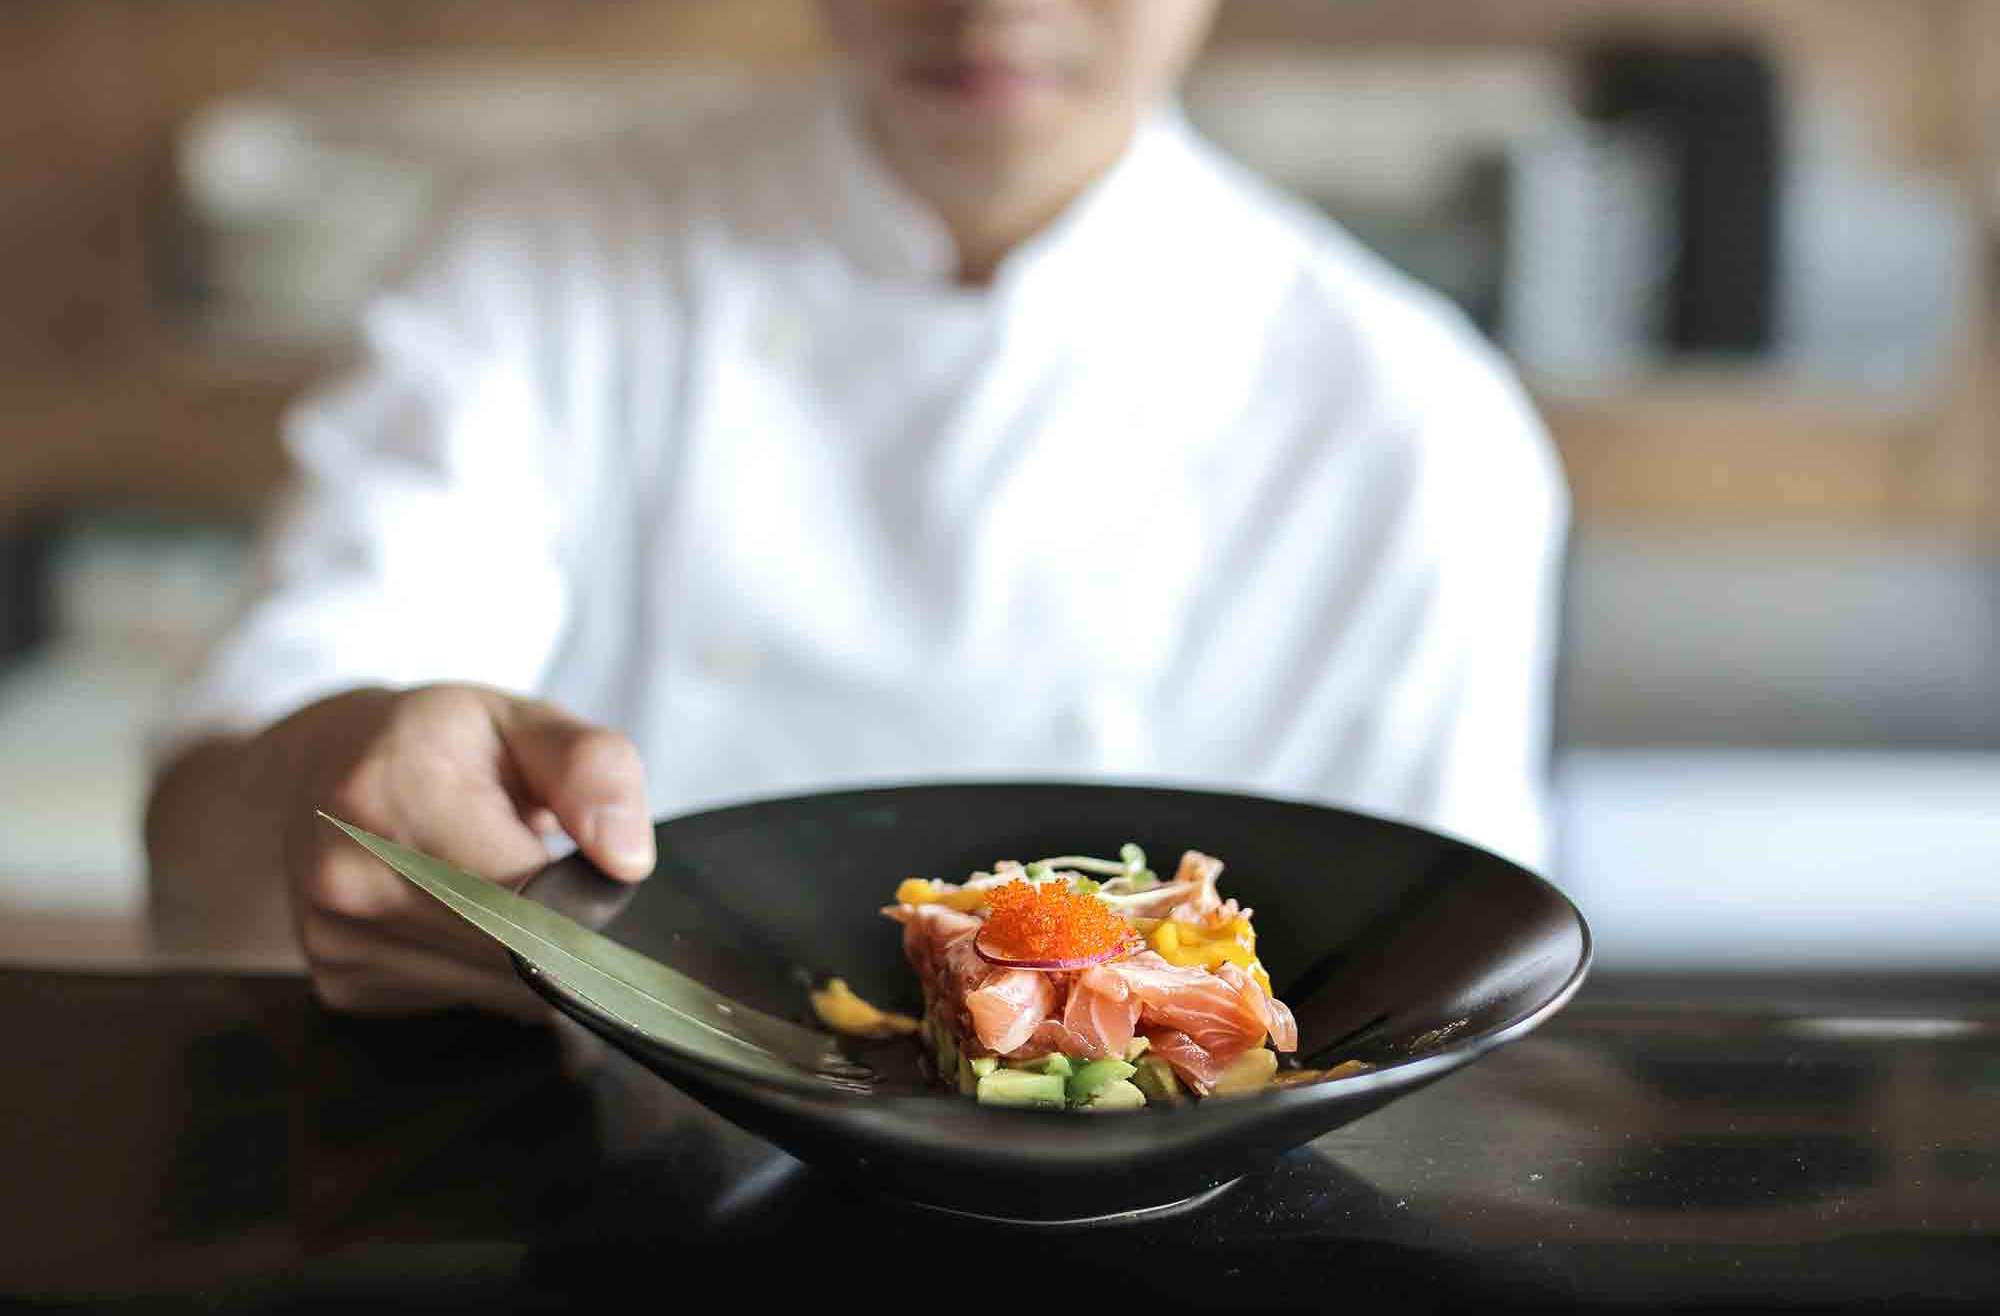 Chef showing plate with fish tartare coronavirus